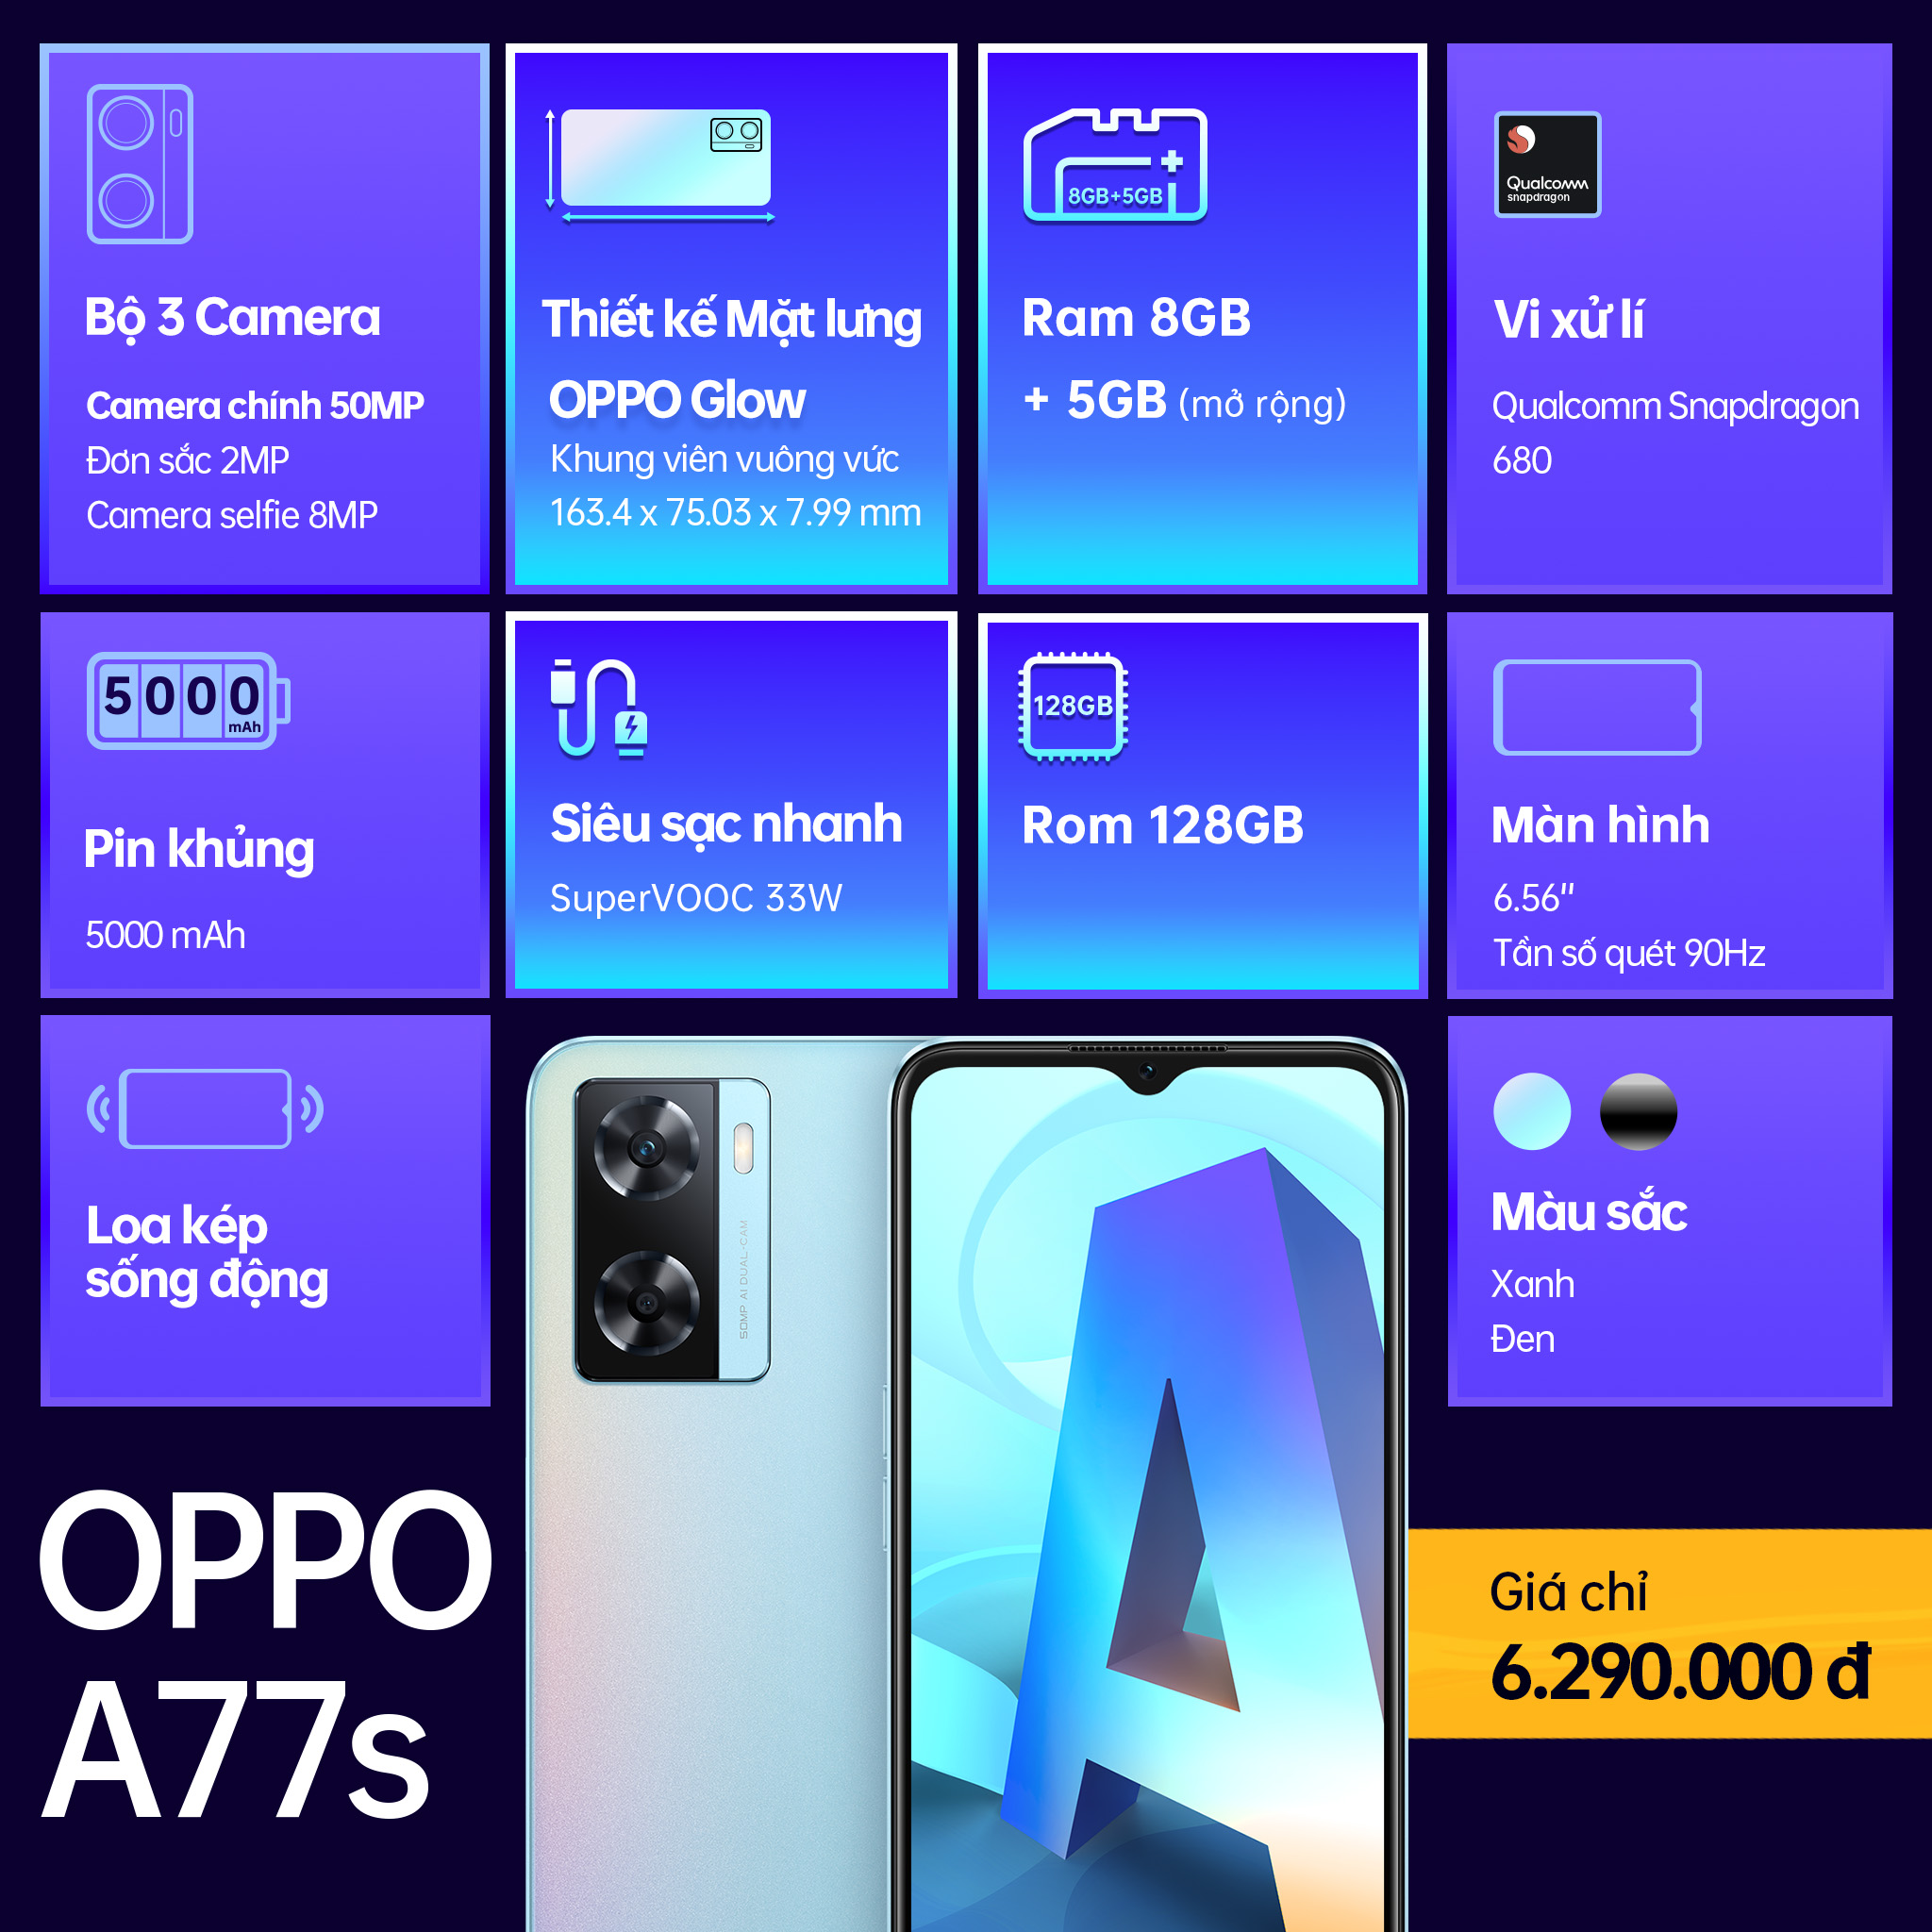 OPPO A77s chính thức ra mắt: Thiết kế thời thượng, hiệu năng mạnh mẽ